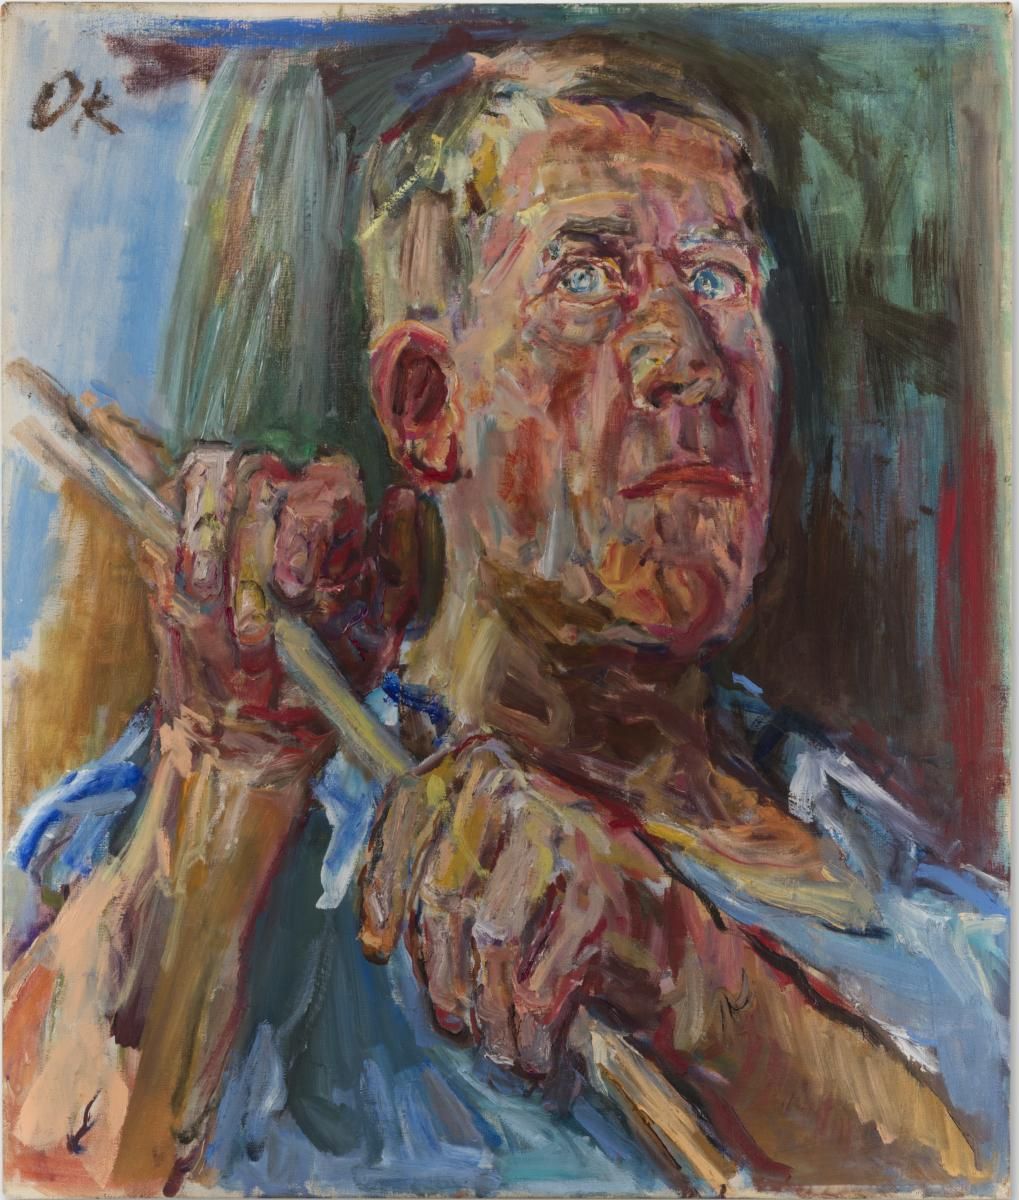 Oskar Kokoschka painted this striking self-portrait in oil on canvas measuring 65.5 x 55 cm in 1948, while in Fiesole. It is held by the Fondation Oskar Kokoschka, Musée Jenisch, Vevey (image: © Fondation Oskar Kokoschka / 2021, ProLitteris)